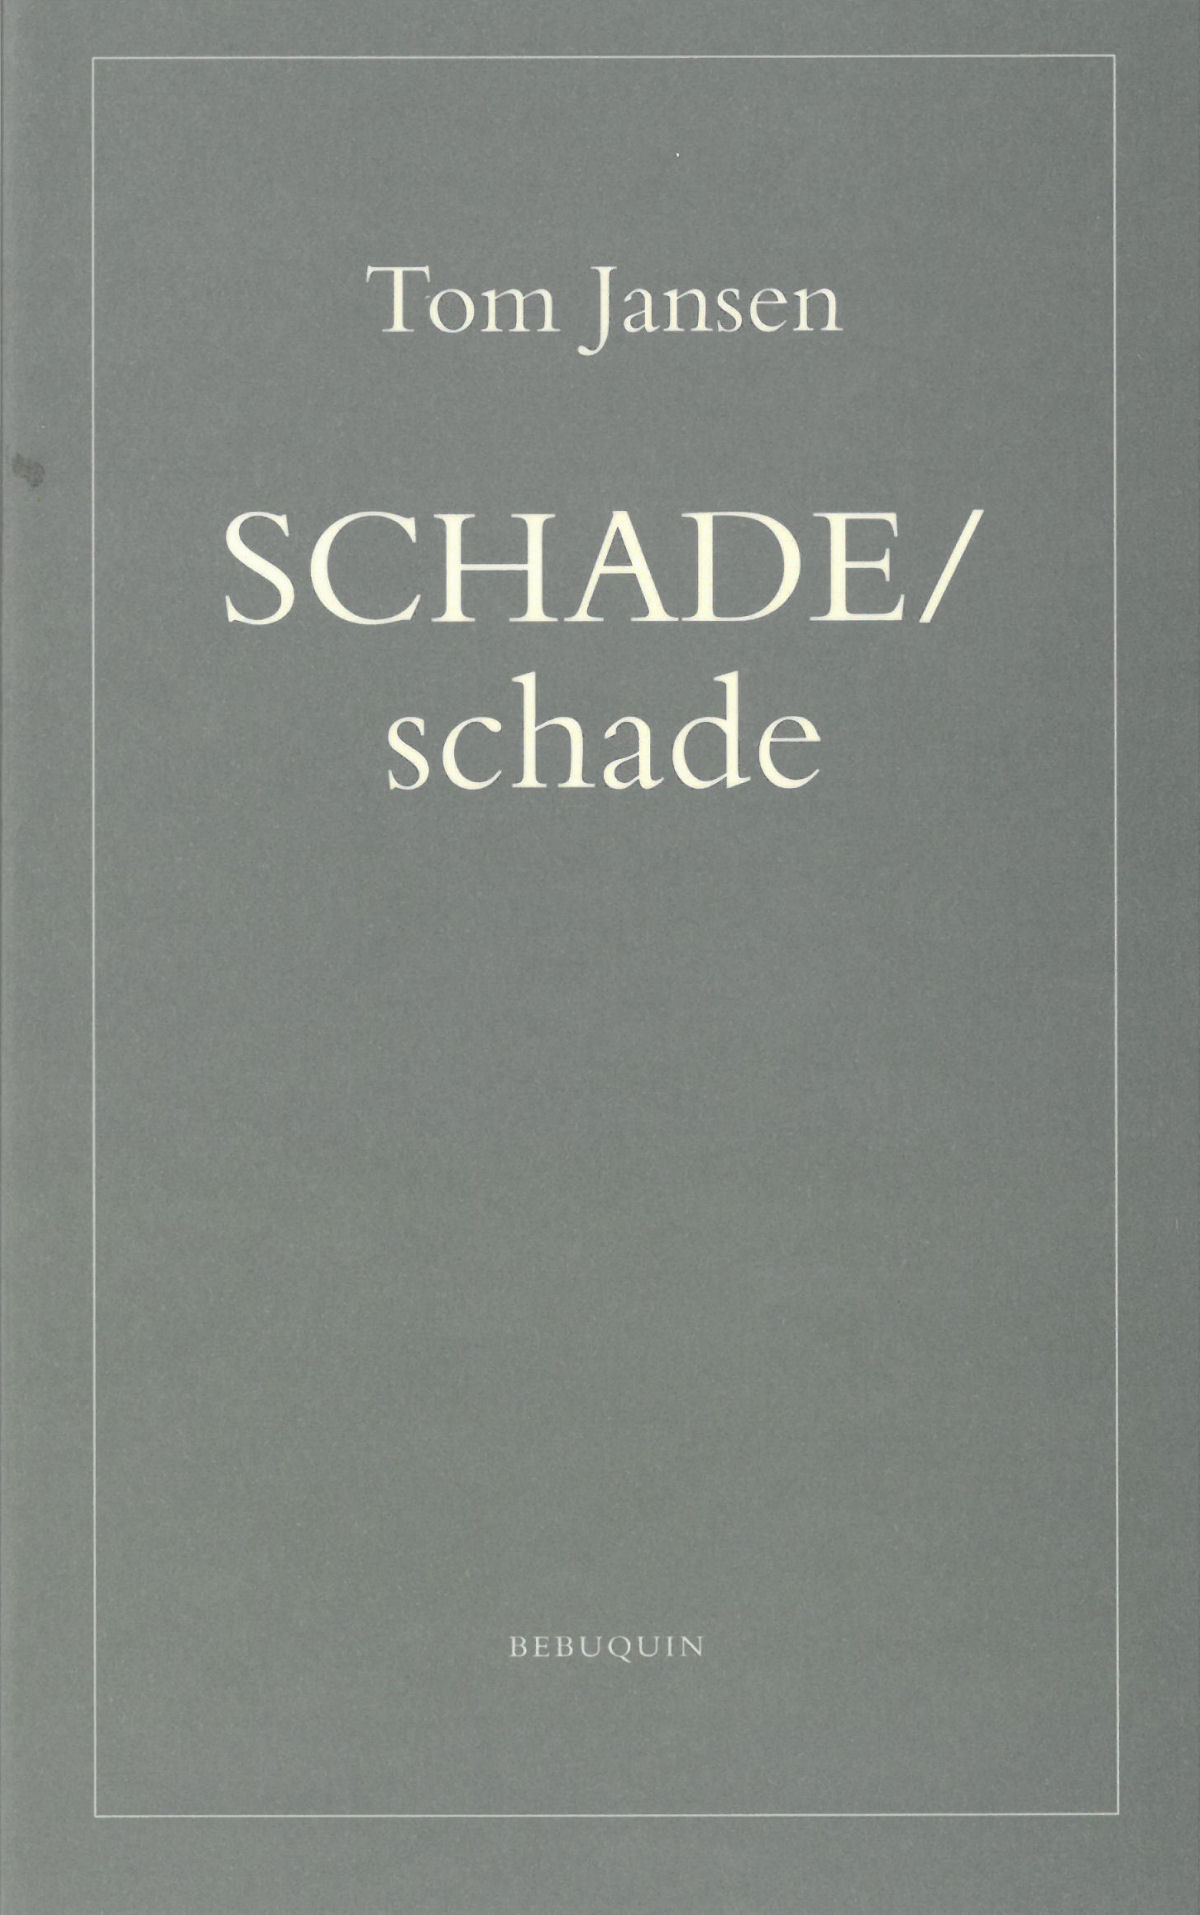 SCHADE/schade